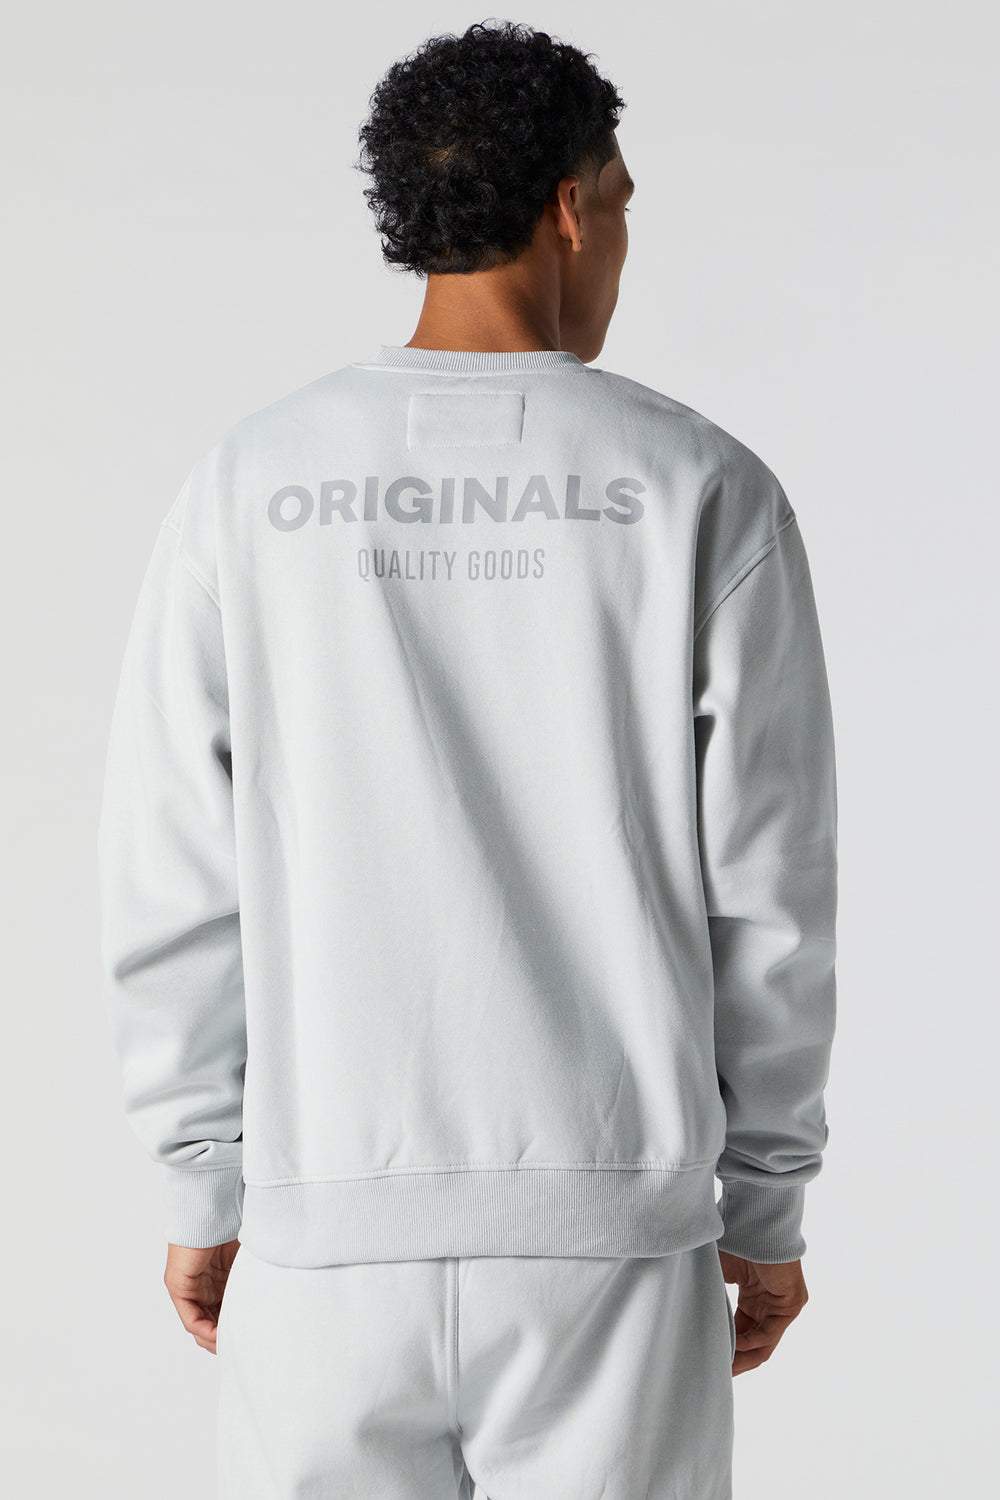 Originals Fleece Sweatshirt Originals Fleece Sweatshirt 7